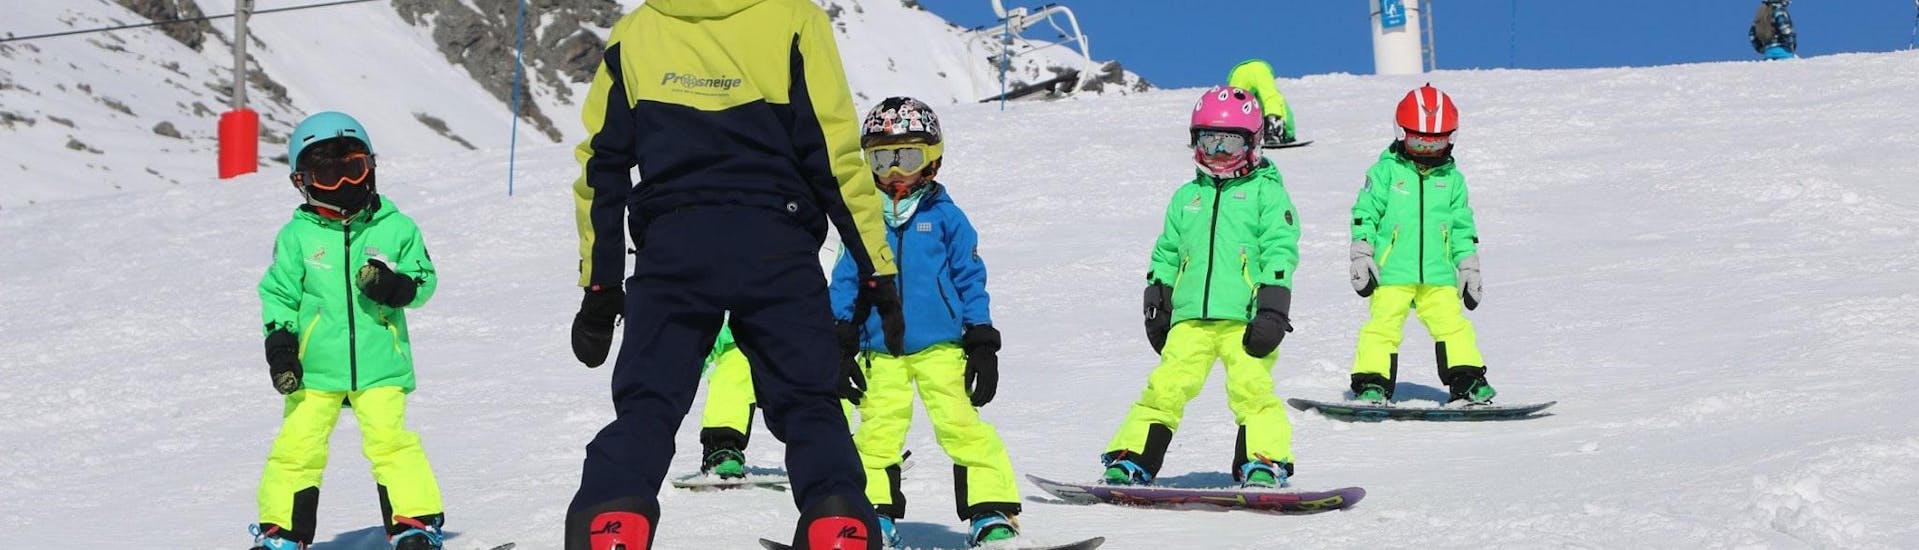 Ein Skilehrer der Skischule Prosneige Méribel unterrichtet lachende Kinder während des Snowboardunterrichts für Kinder jeden Alters und jeden Levels.